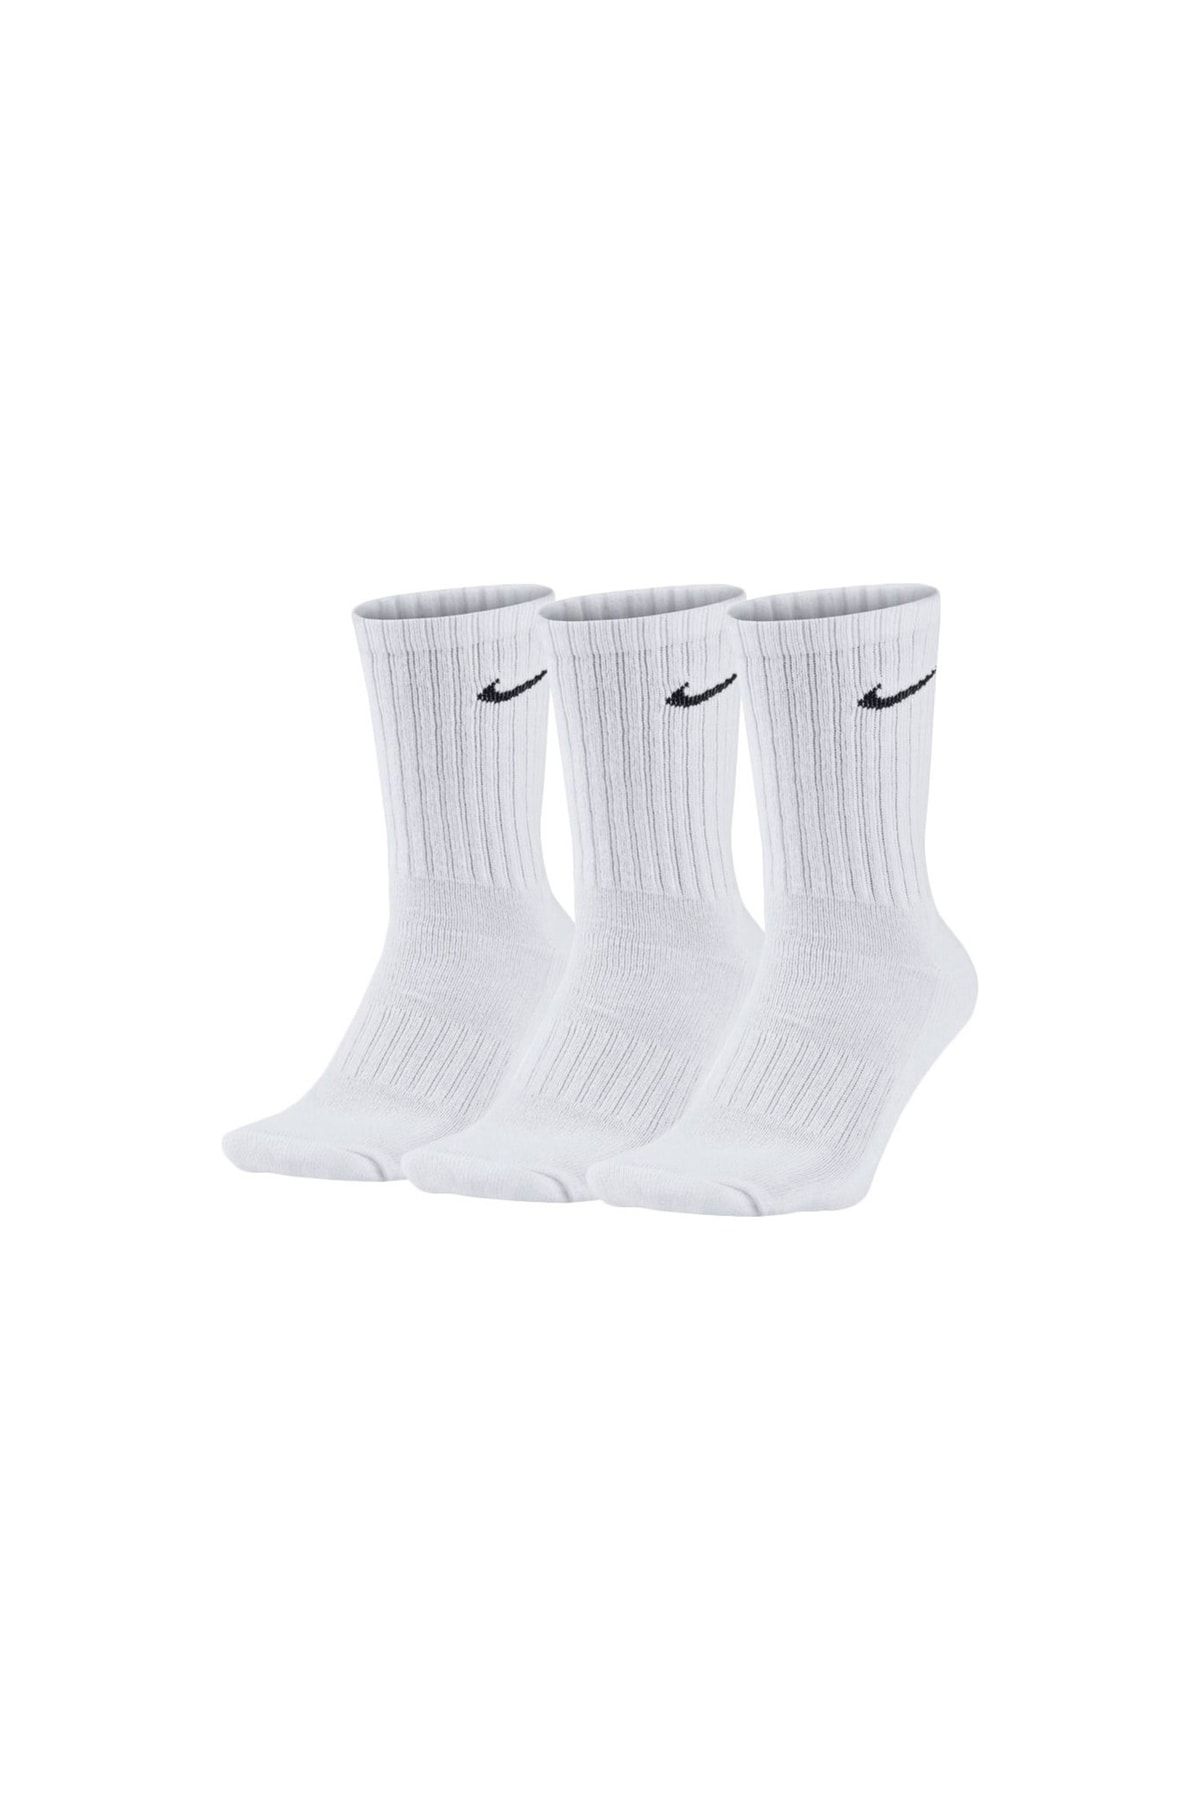 Nike Everyday Lightweight Beyaz Erkek Çorap - Sx7676-100